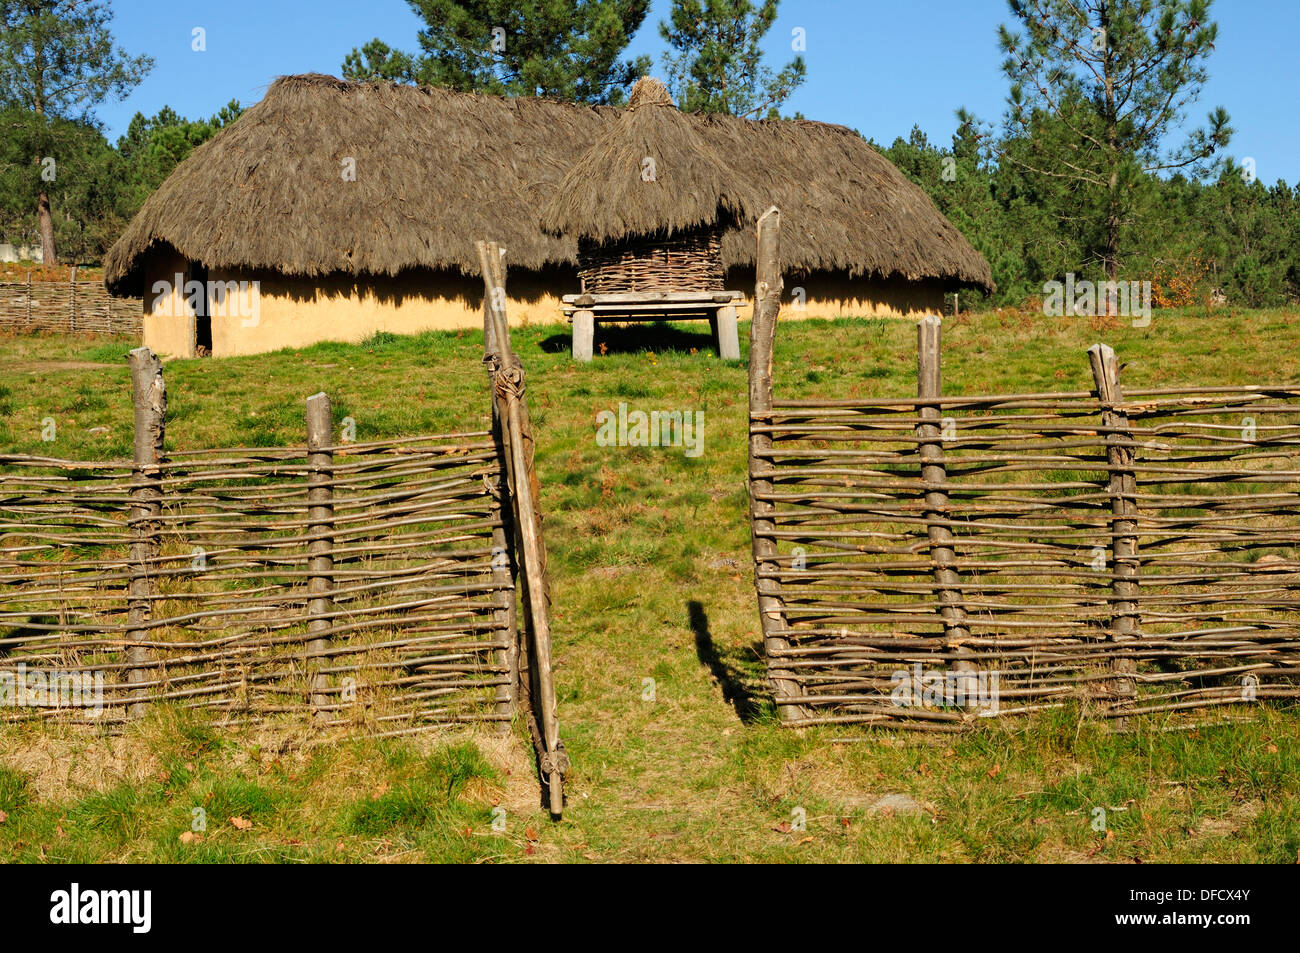 Recreation of a Bronze Age village in an archaeological park. Parque arqueoloxico da arte rupestre. Campo Lameiro, Galicia. Stock Photo